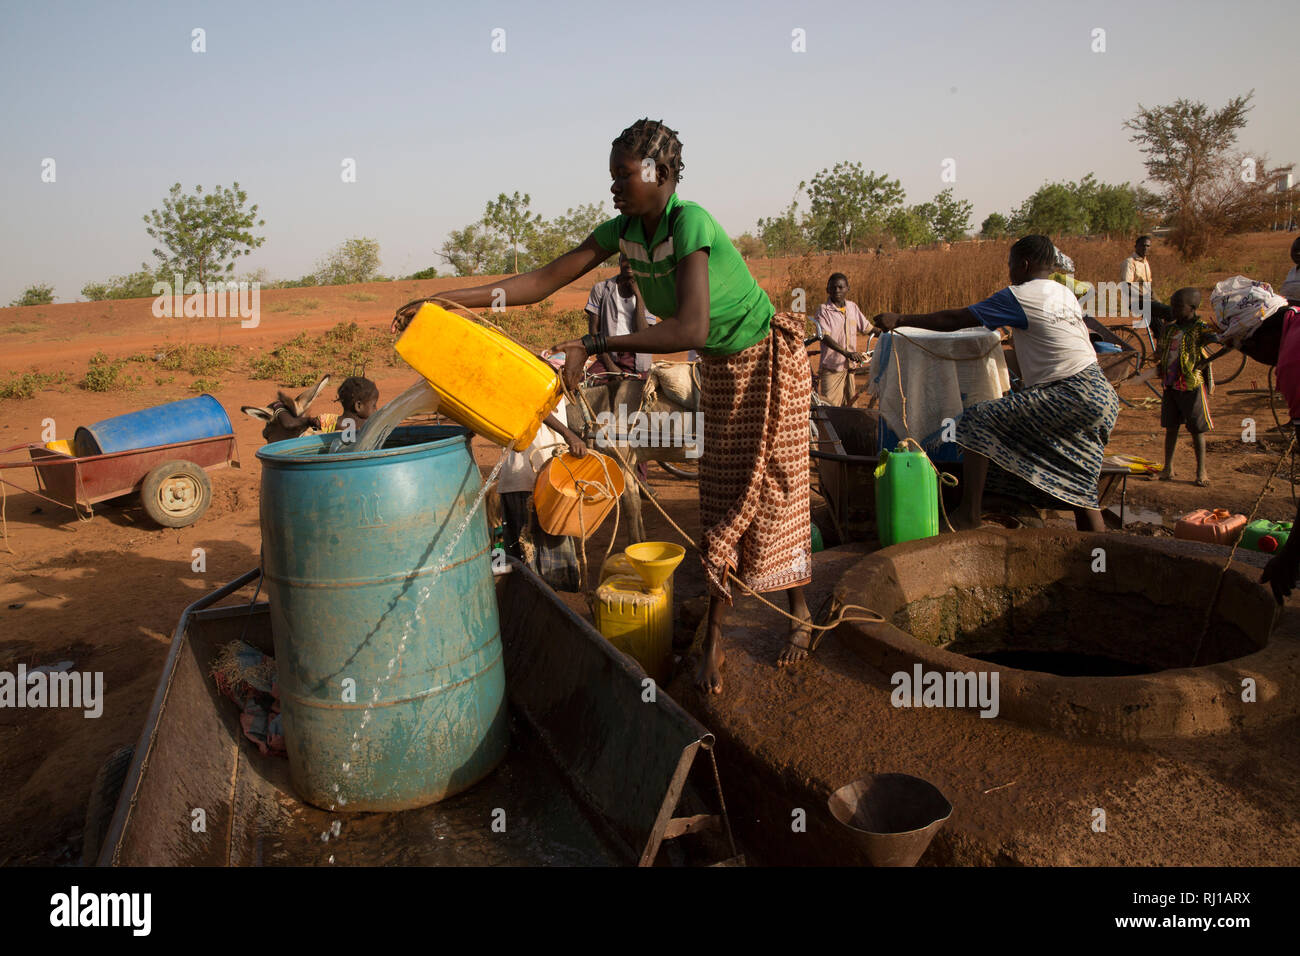 Samba Dorf, yako Provinz, Burkina Faso: Abzetta Sondo, 19, holt Wasser für Ihren Haushalt. Stockfoto